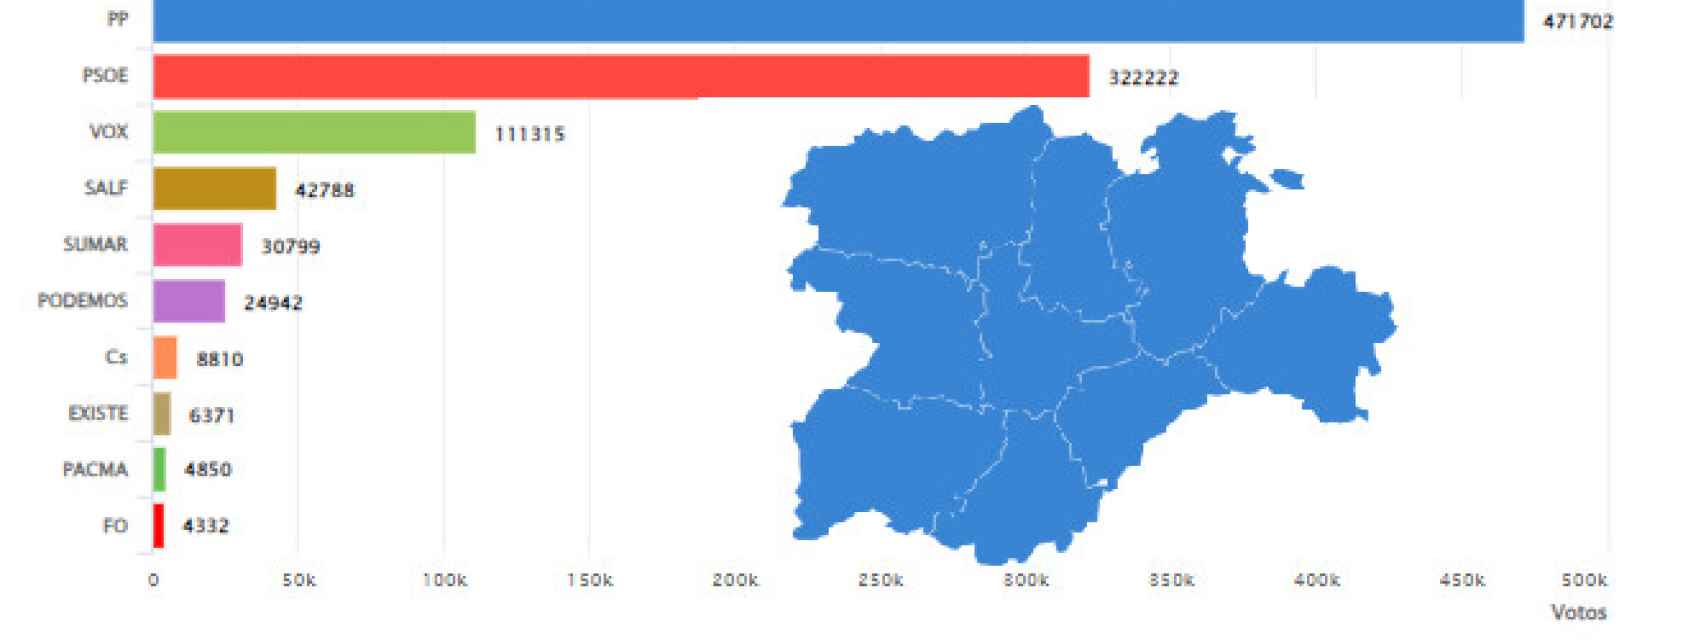 El PP gana en todas las provincias: Castilla y León se vuelve a teñir de azul